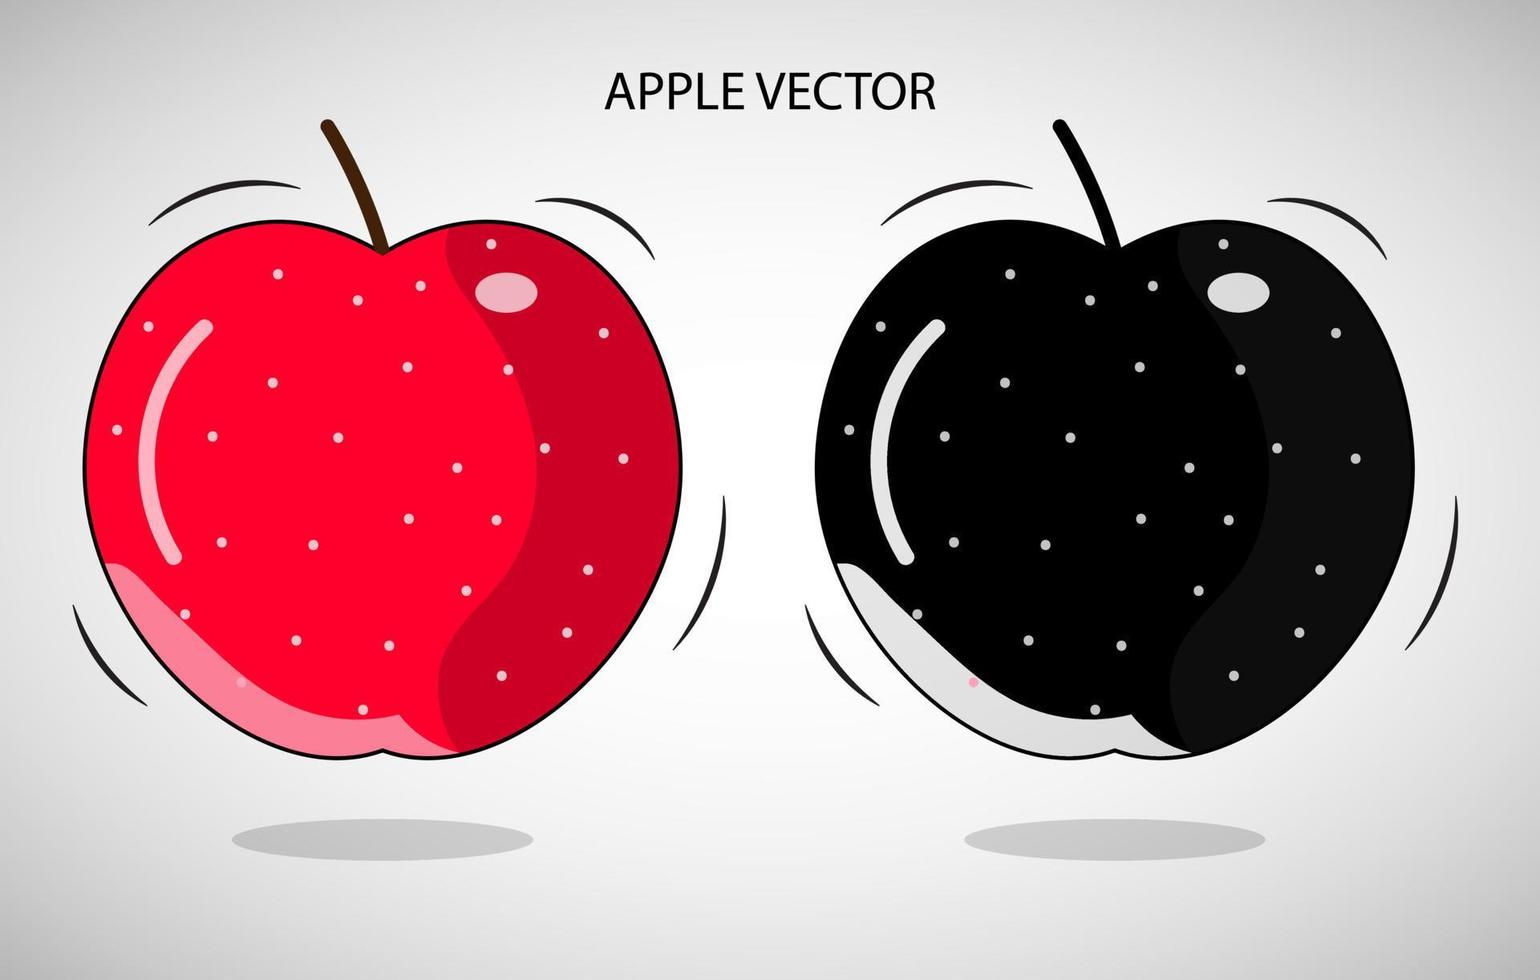 vecteur d'illustration de pomme gratuit, vecteur de pomme rouge et noir, vecteur de pomme plate, dessin de pomme coloré, icône de pomme